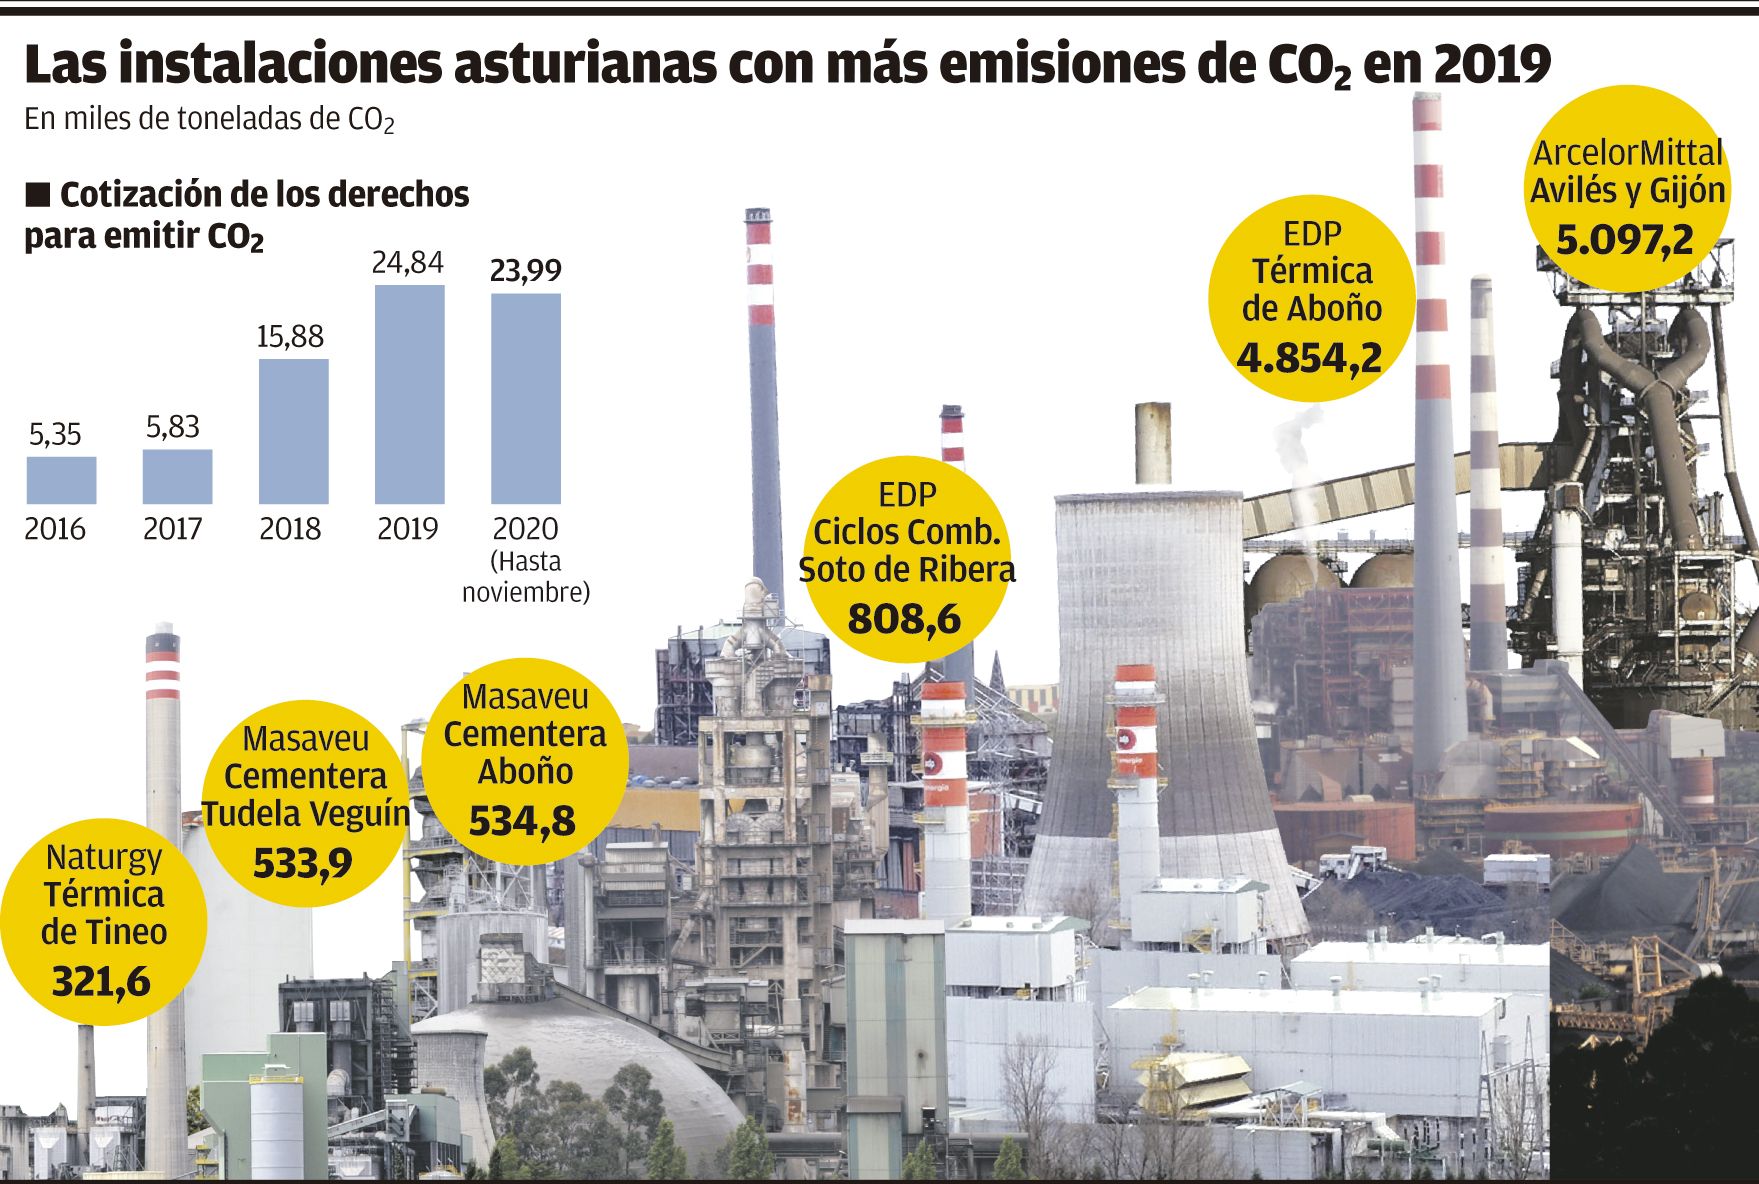 Las instalaciones asturianas con más emisiones de CO2 en 2019